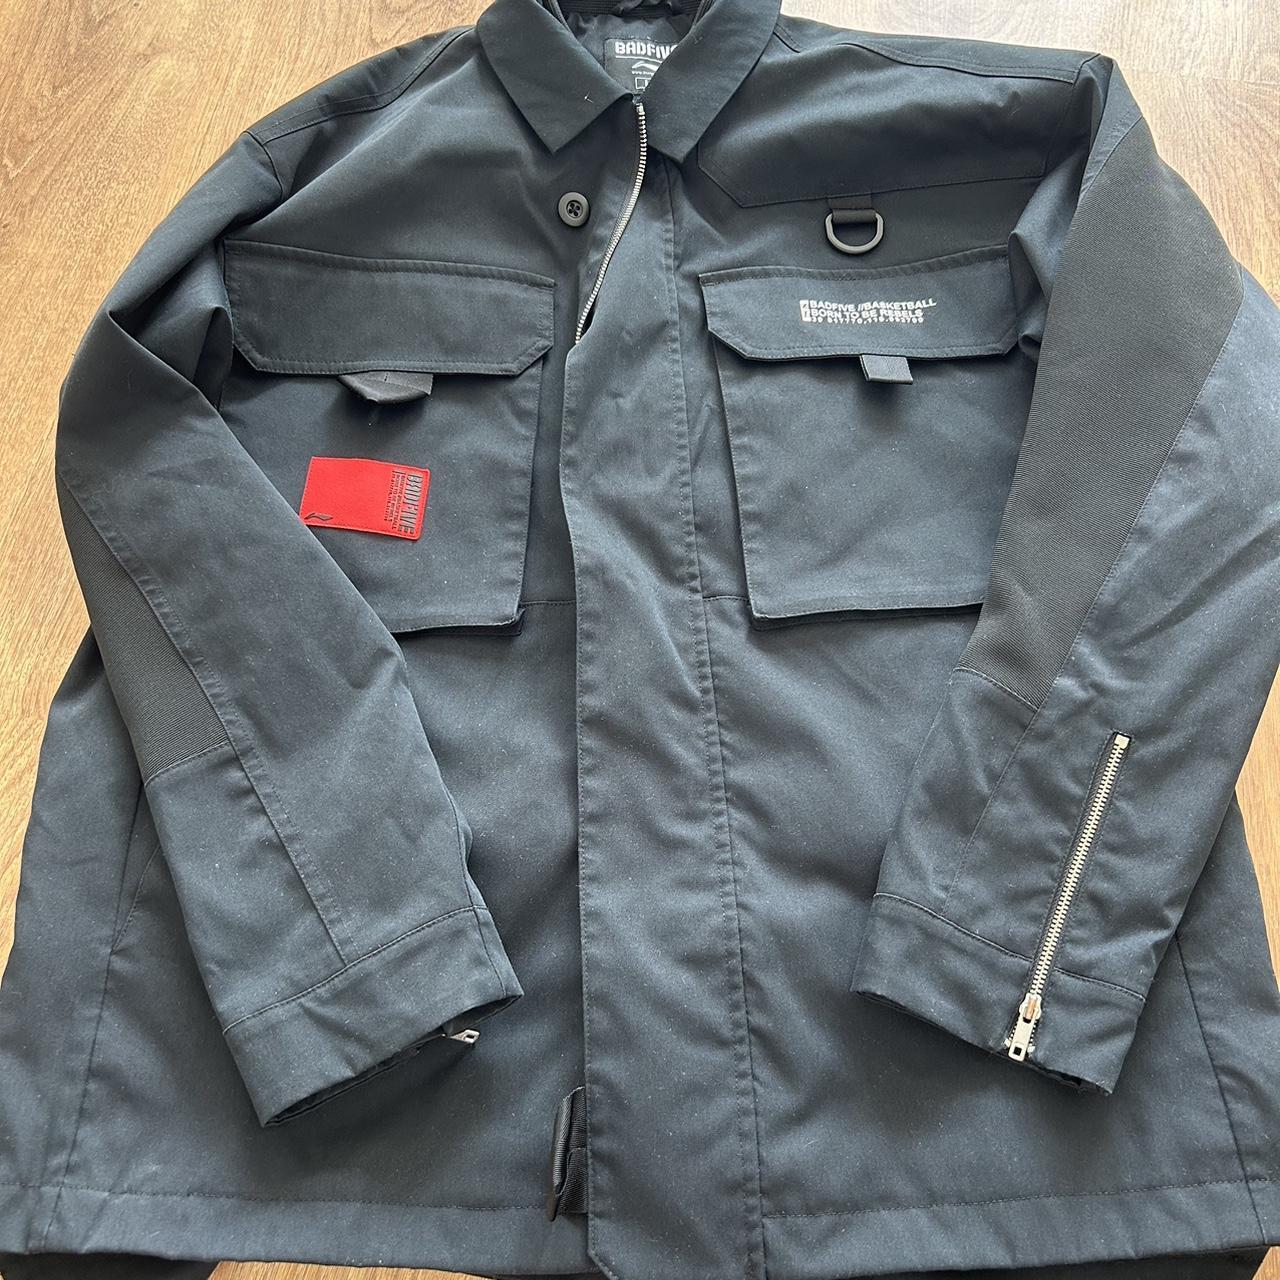 men’s badfive jacket black side zip detail size L... - Depop